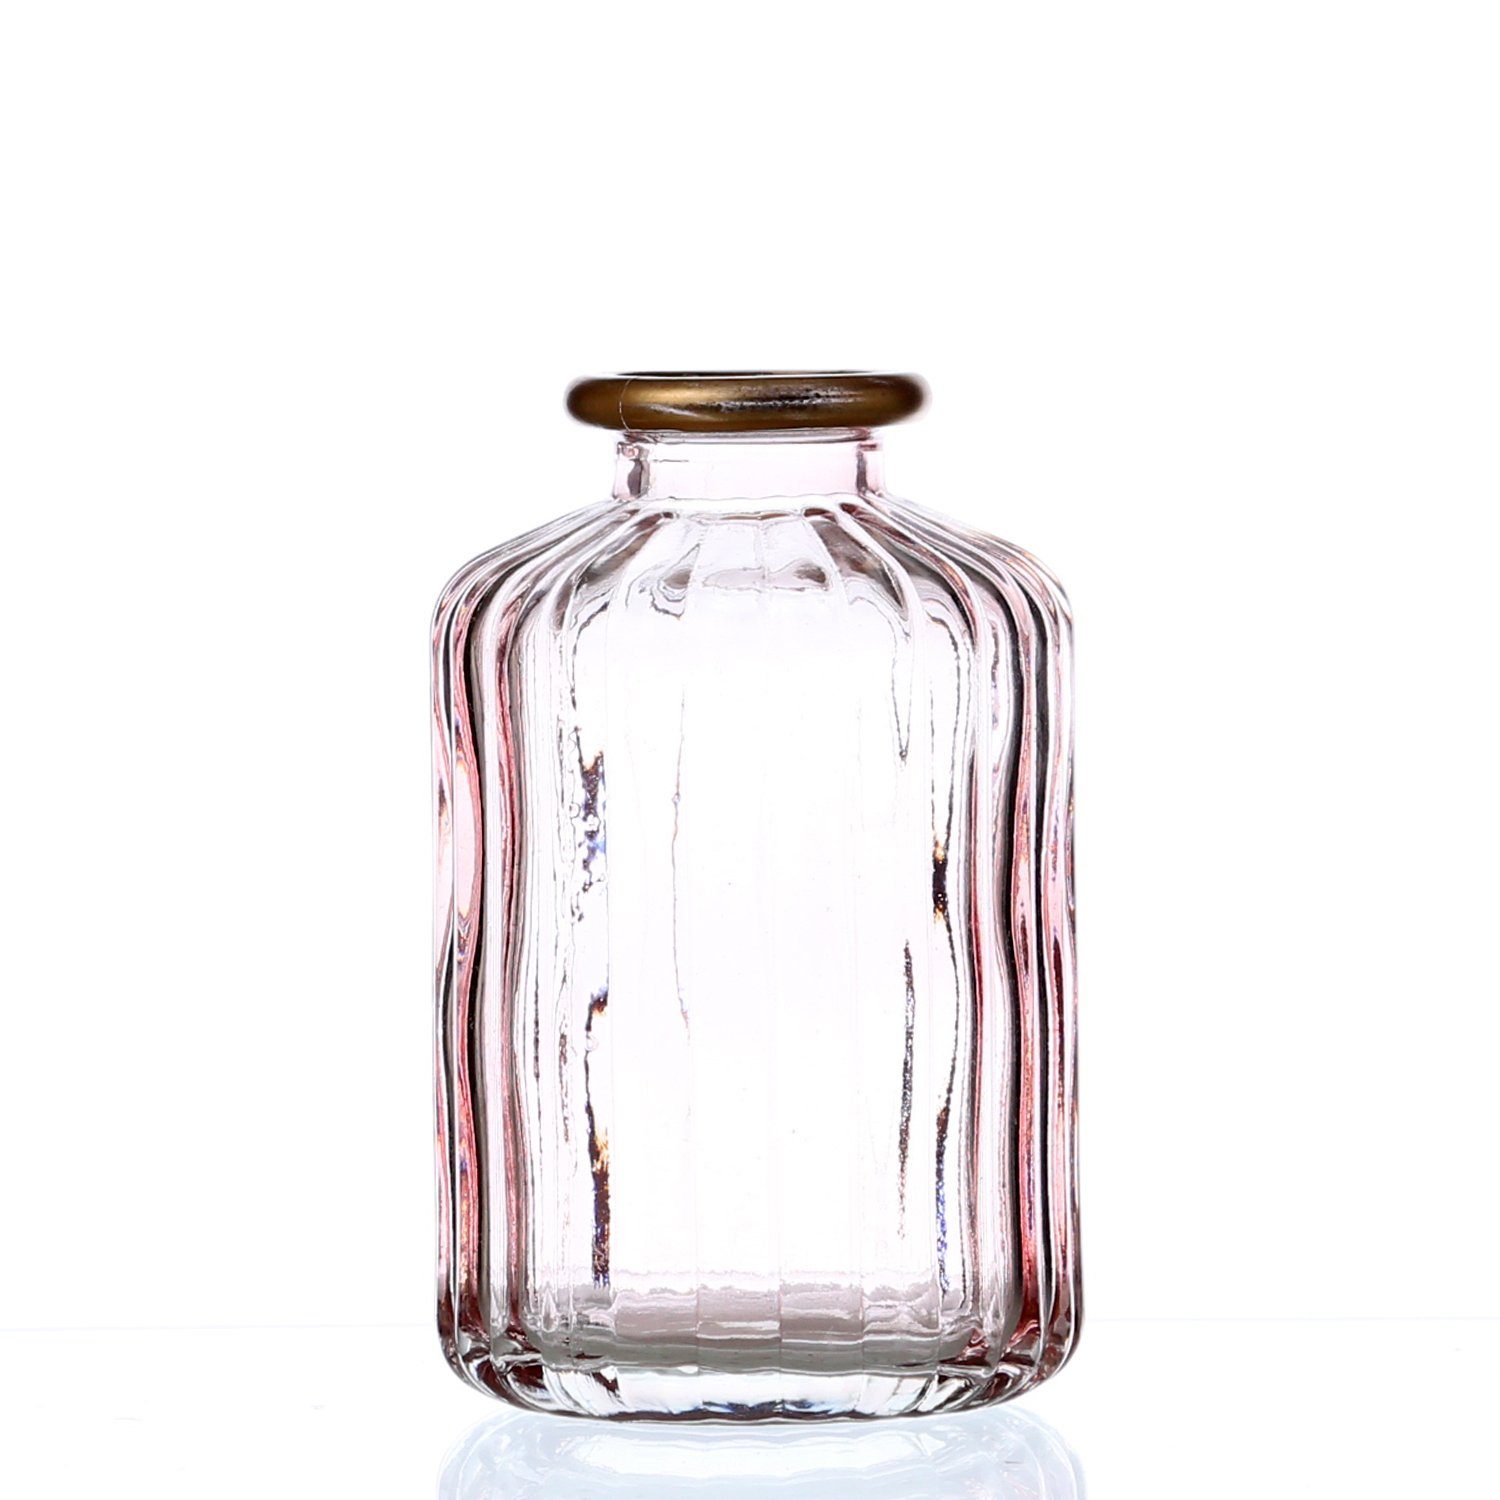 Glasflasch Flasche Glas Vase Blumenvase Eisfinish weiß silber Weichnachten Deko 